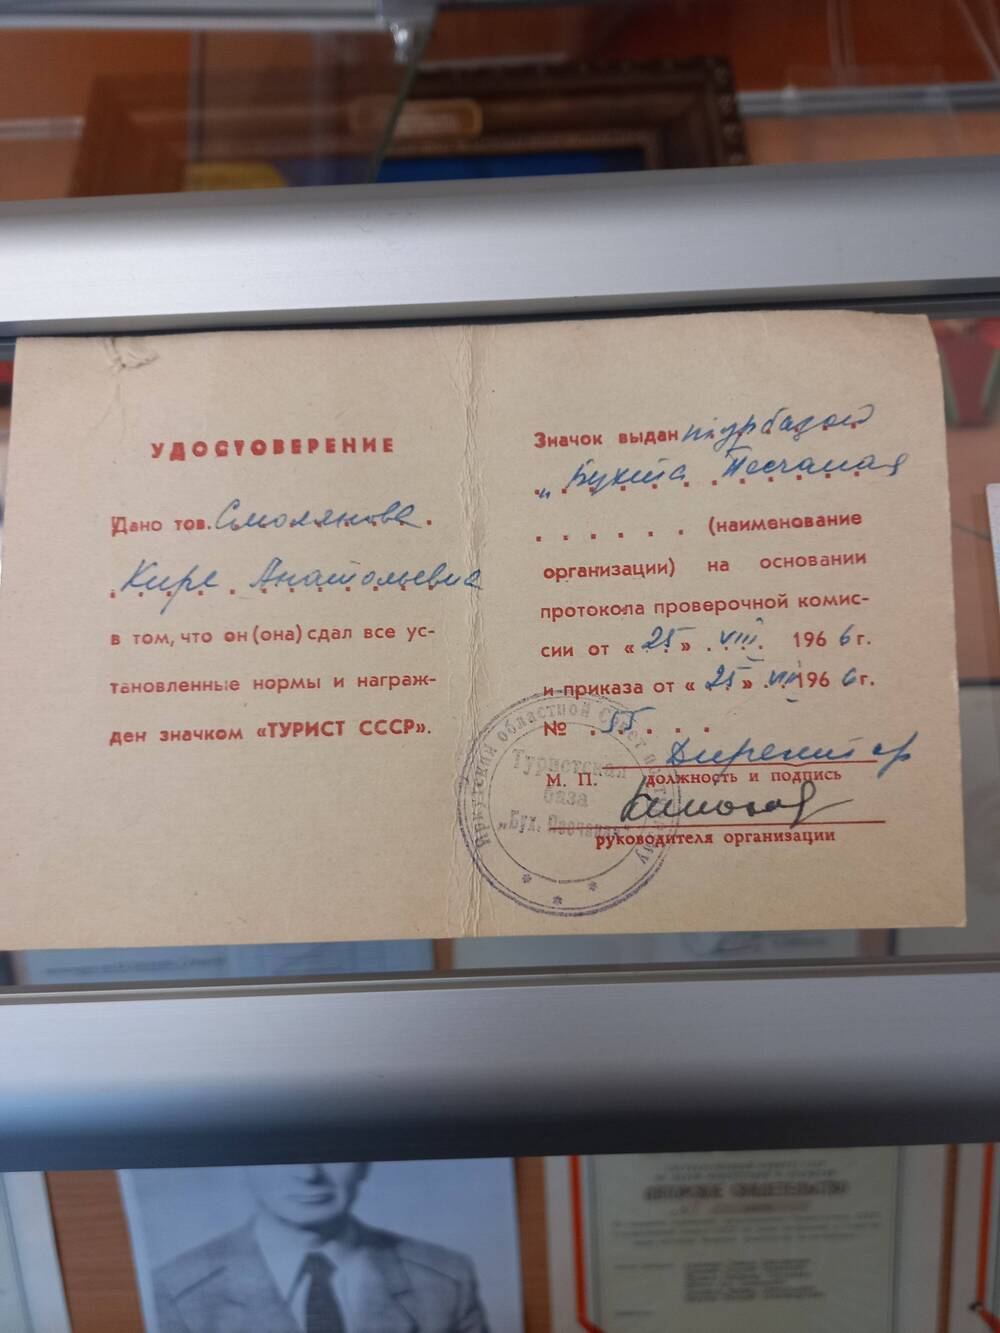 Удостоверение Смоляновой К.А. о выдачи значка «Турист СССР» от 25.08.1966